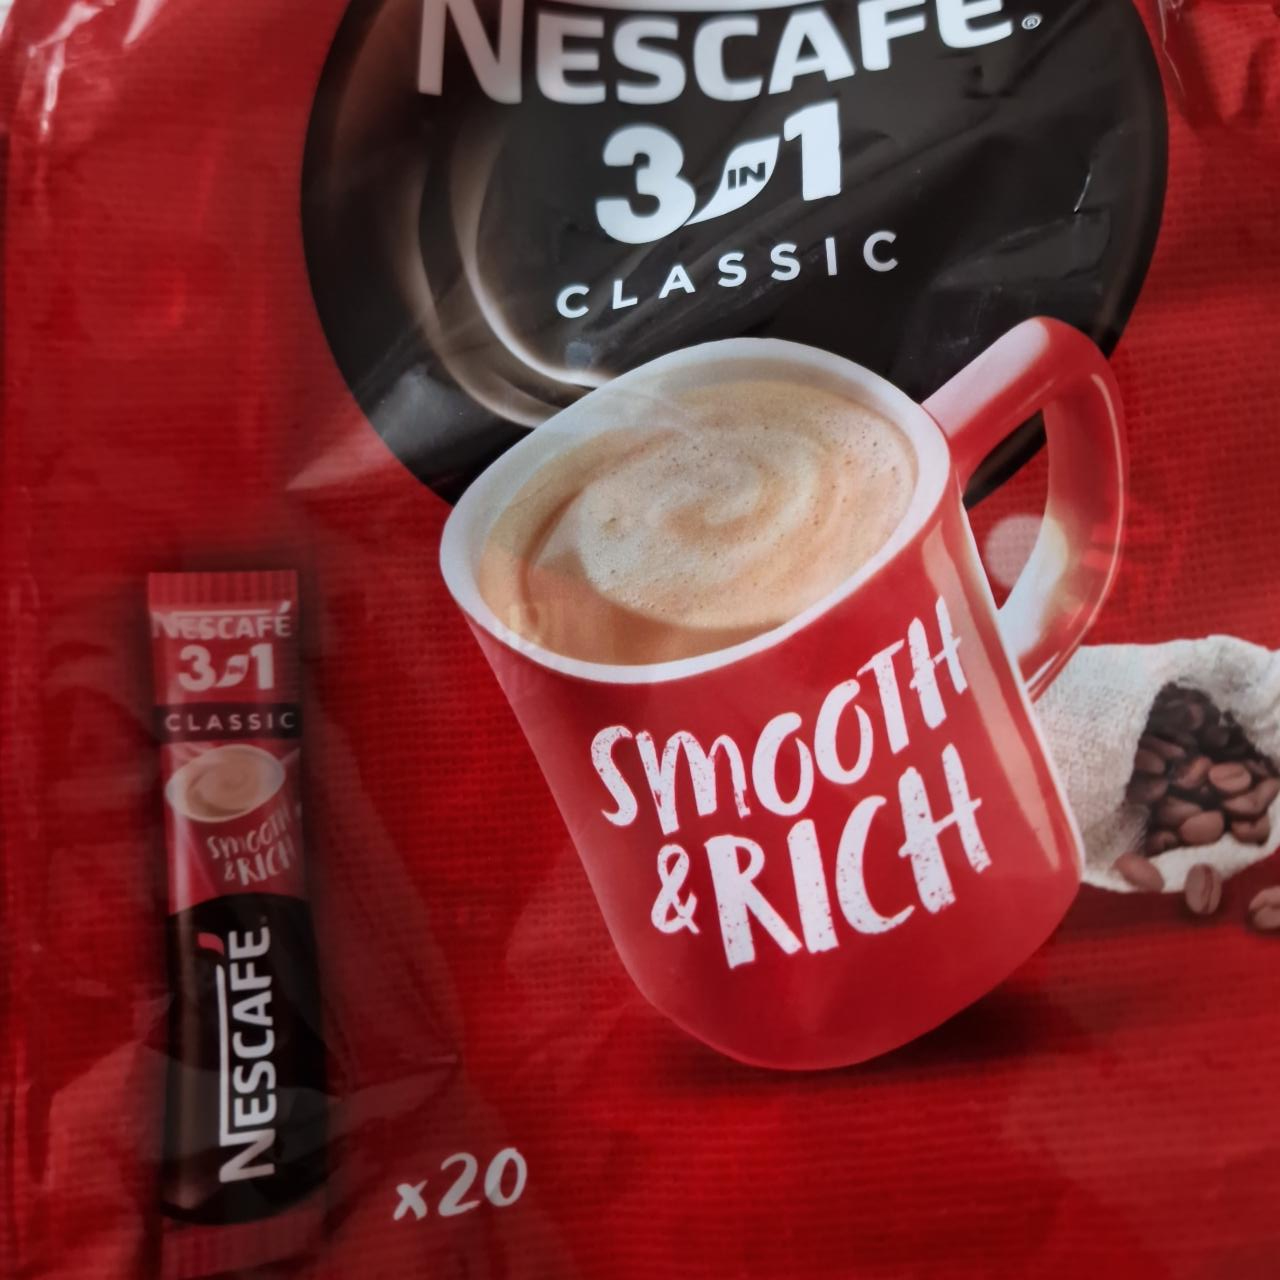 Zdjęcia - Nescafe 3w1 classic smooth & rich